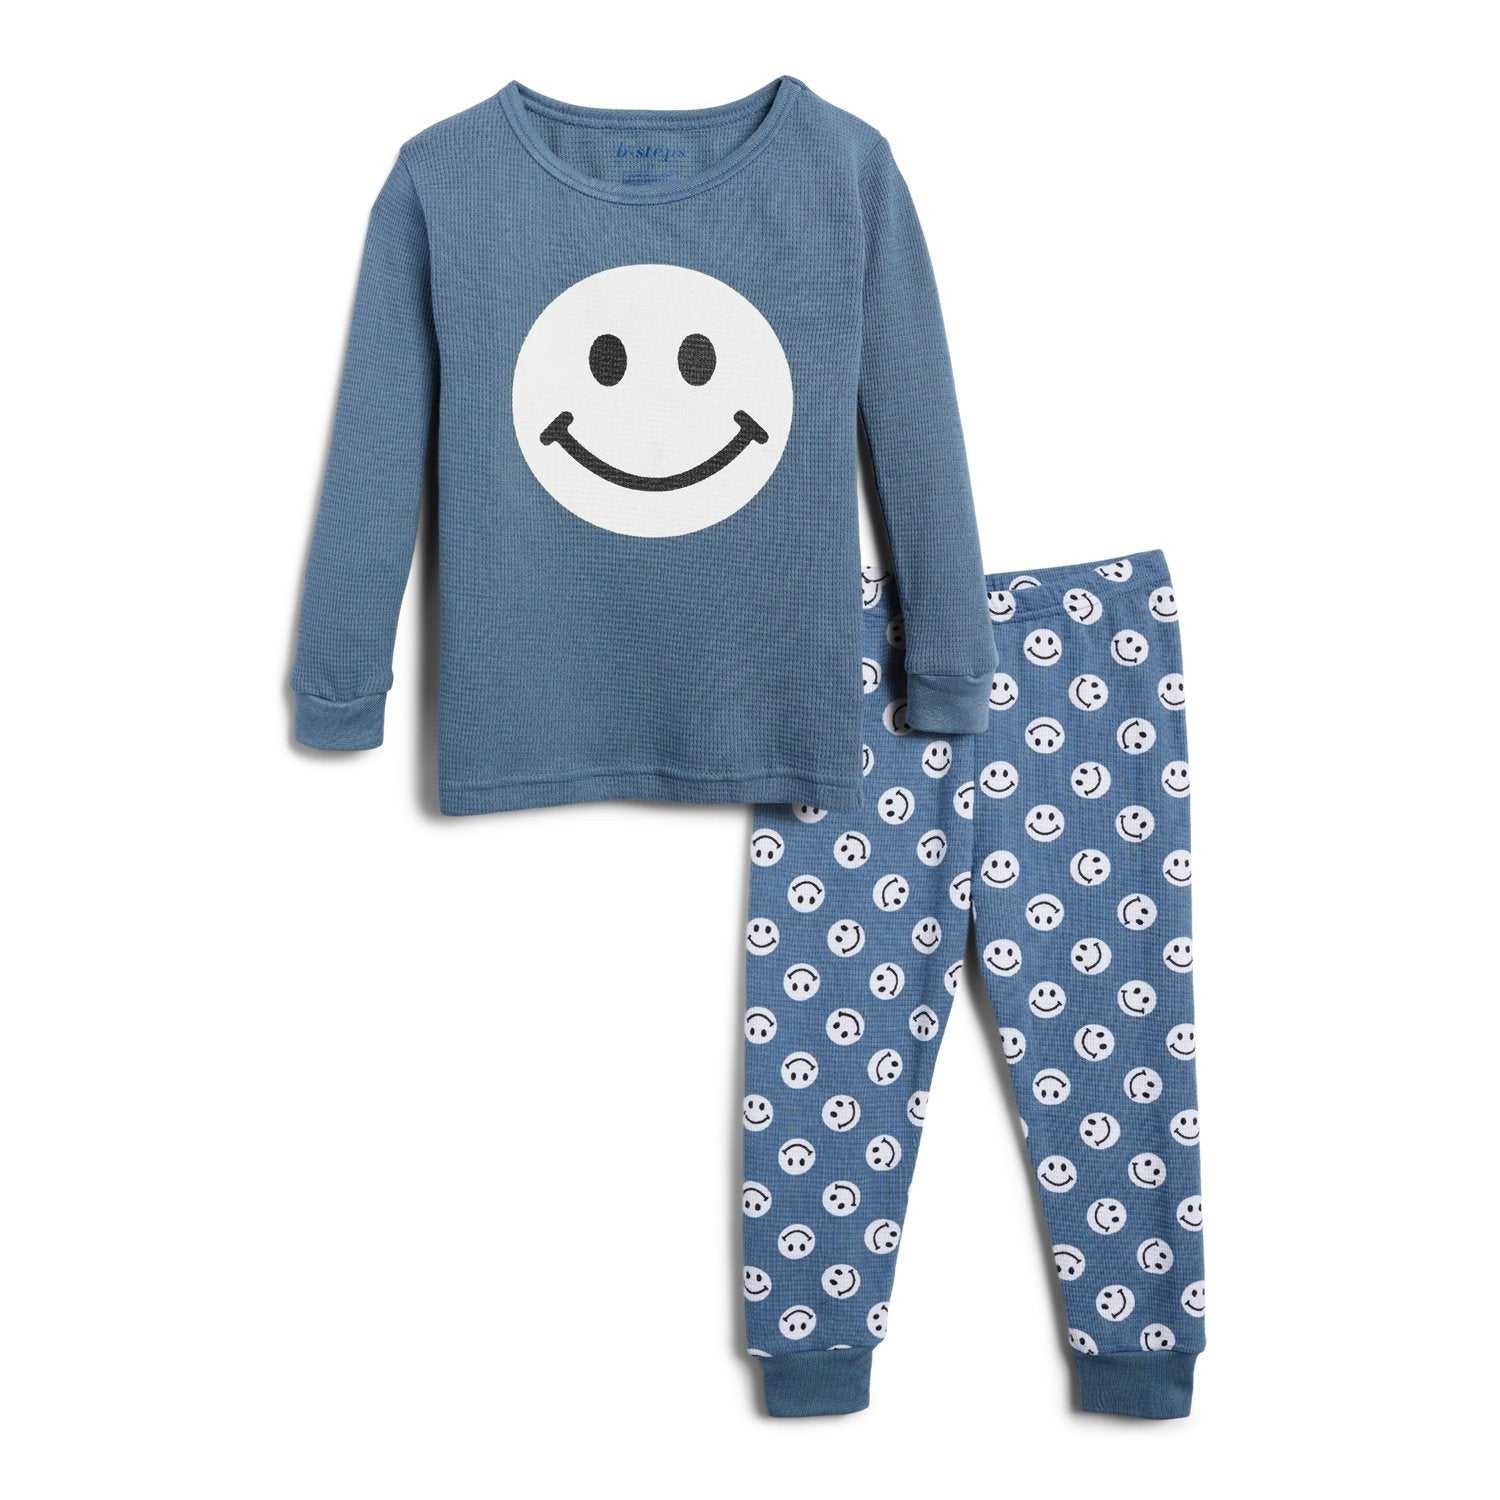 Toddler Boys 2-Piece Smile Pajama Set